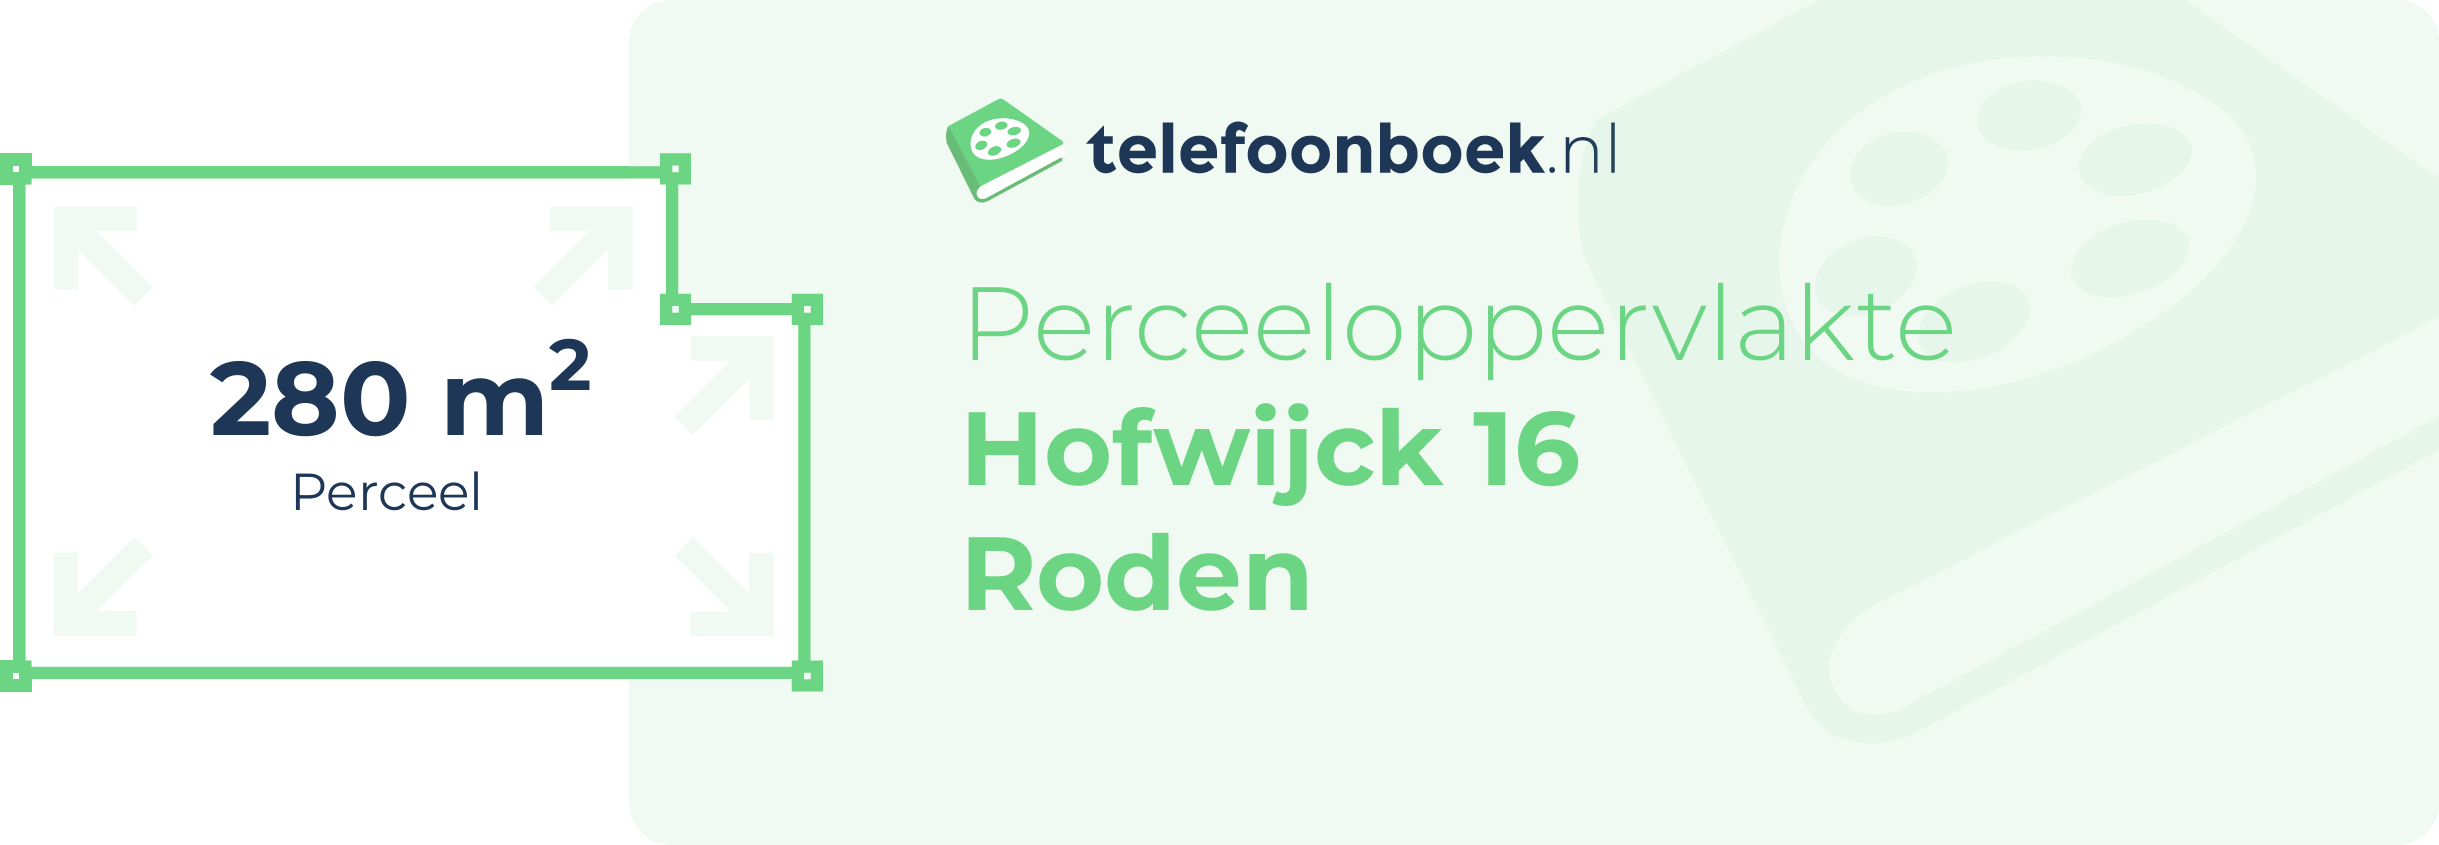 Perceeloppervlakte Hofwijck 16 Roden